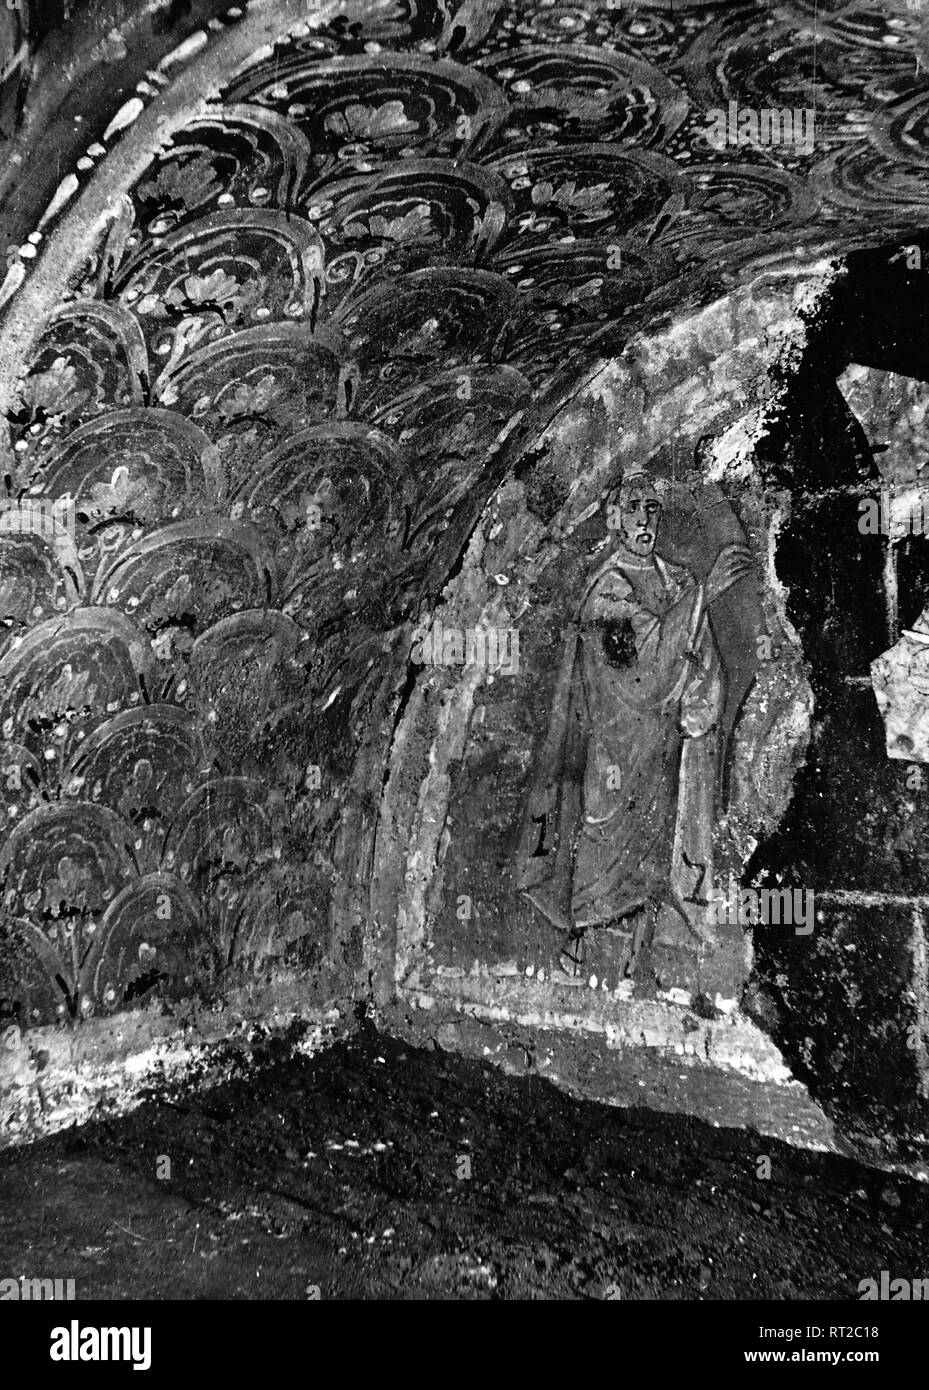 Erich Andres Italien - In den Katakomben von Rom in den 1950er Jahren: die Auferweckung des Lazarus, ein oft benutztes Motiv für die Ausschmückung der Totengrüfte, wohl als Wunschsymbol für ein baldiges Weiterleben im Jenseits zu deuten. Der Erlöser wird auf allen diesen frühchristlichen Darstellungen stets ohne Bart gezeigt. Die beiden Buchstaben auf der Tunika deuten wohl auf den Namen Jesus hin. 512/15 Stock Photo